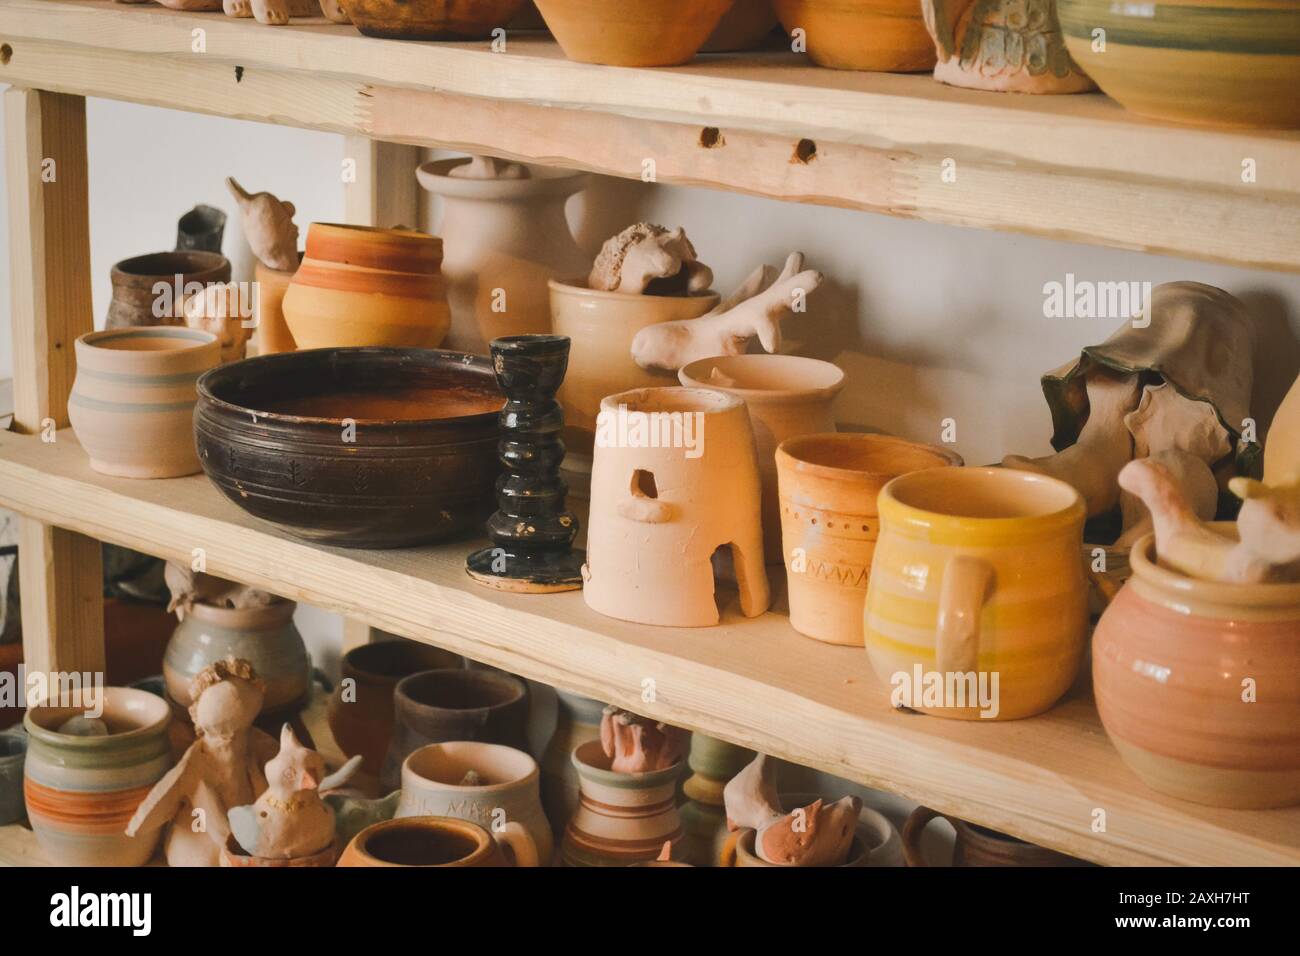 Des étagères en bois dans un atelier de poterie où il y a de la poterie, beaucoup de poterie différentes debout sur les étagères dans un atelier de poterie. Faible luminosité Banque D'Images